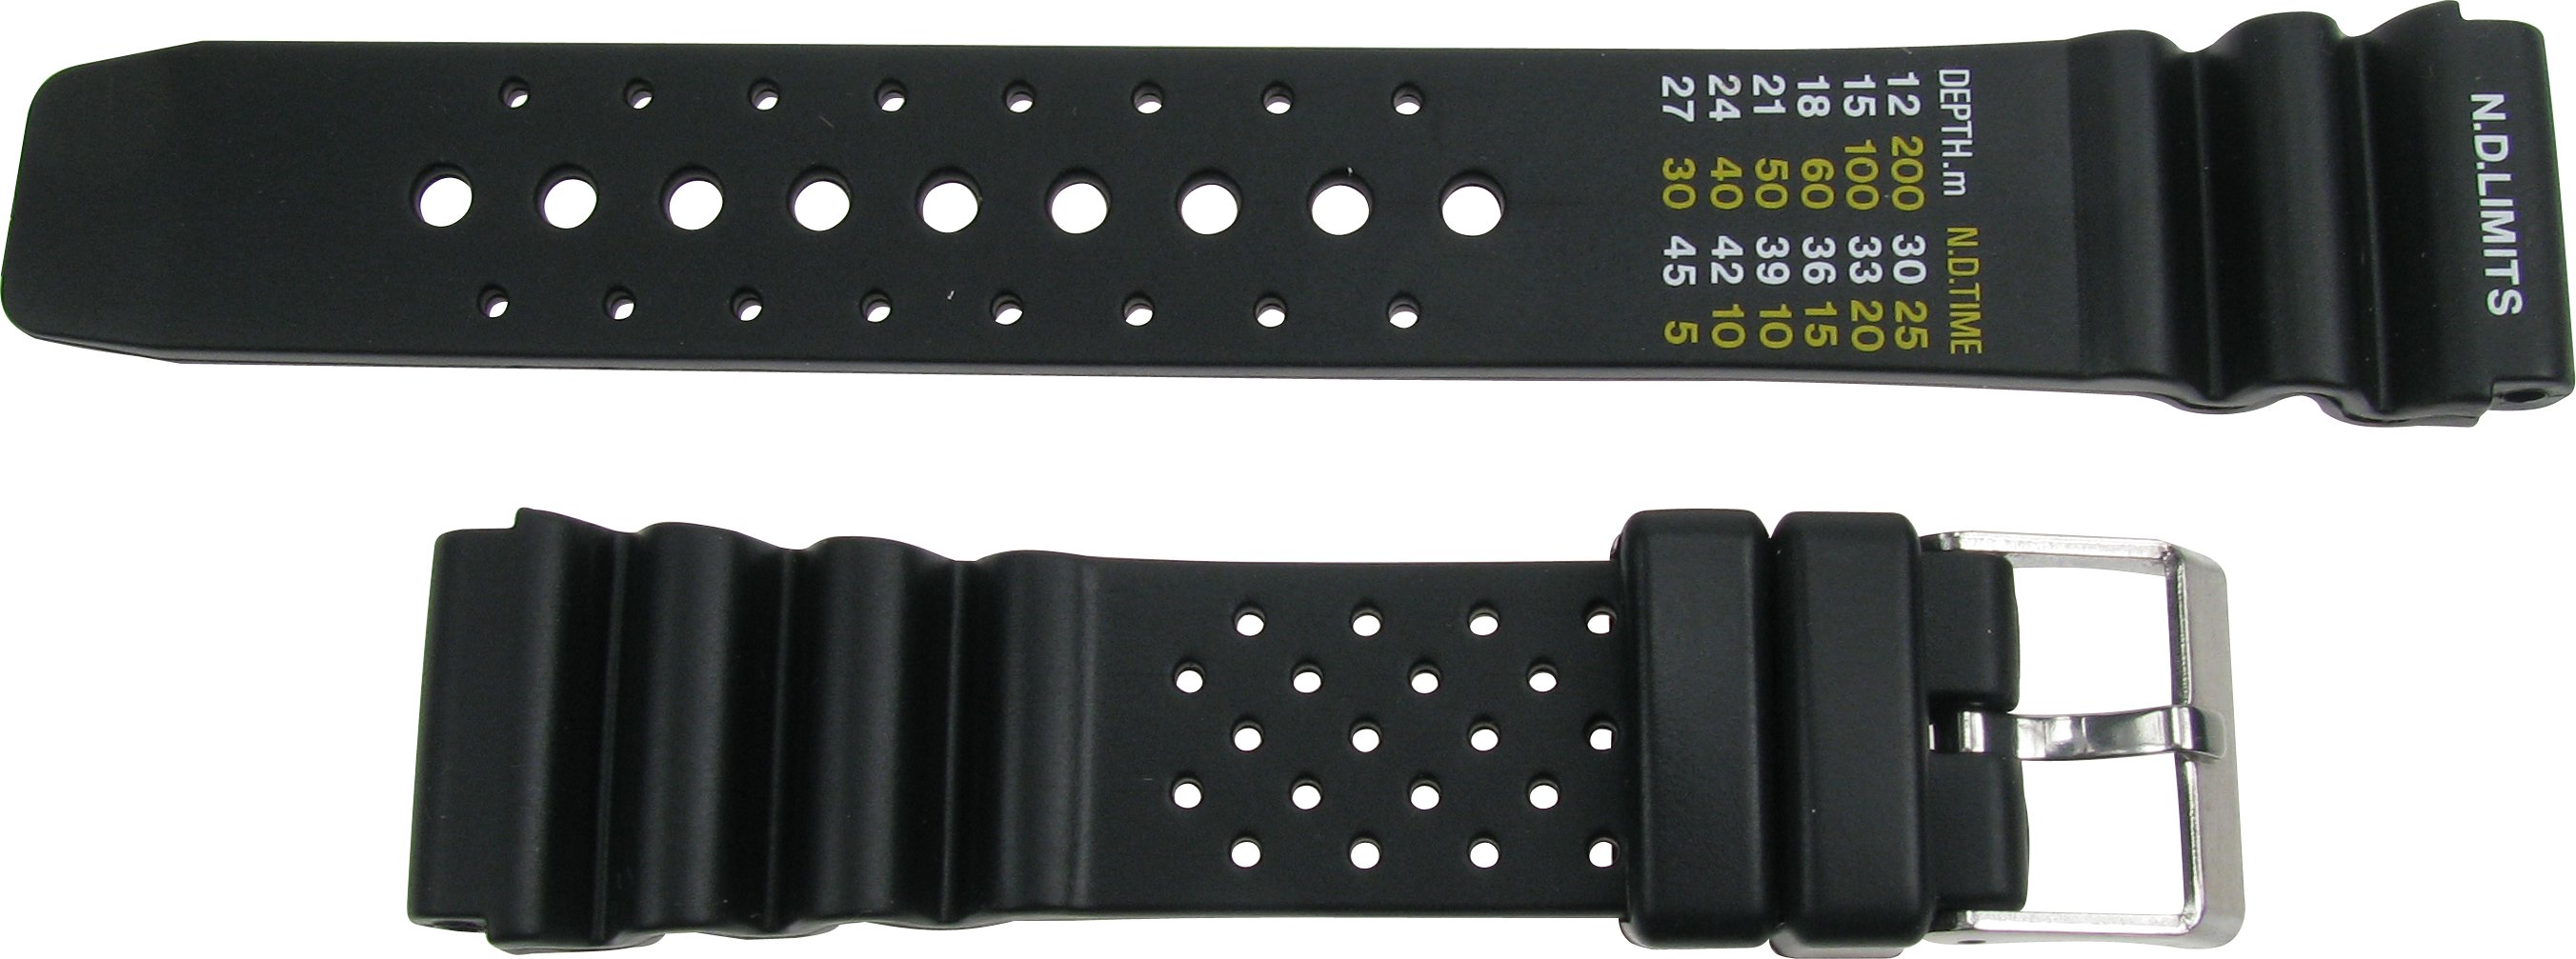 Taucherband 22mm schwarz mit Taucherskala